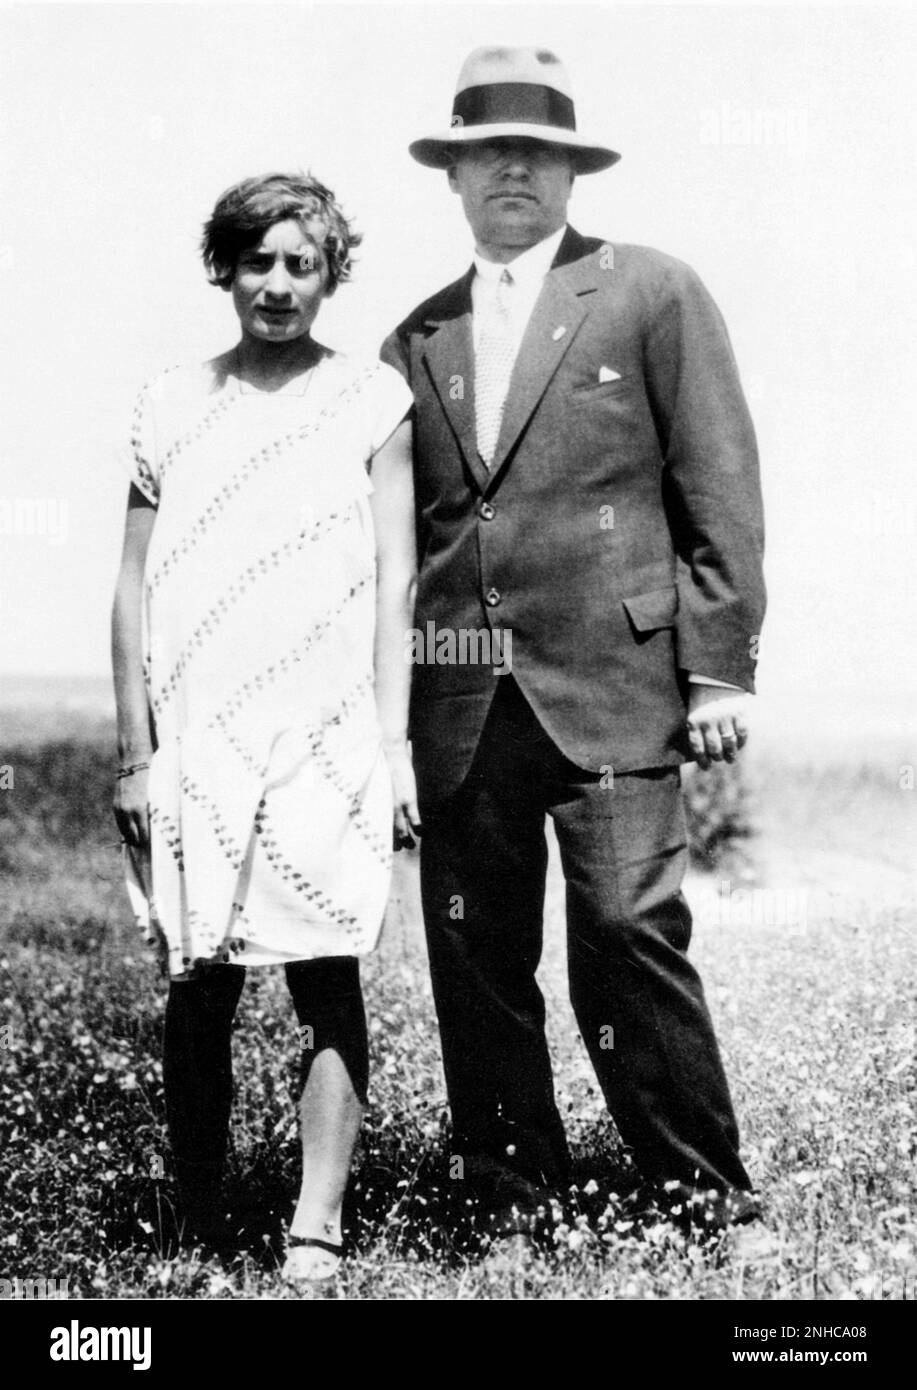 1924 ca., ITALY  : The italian fascist dictator Duce BENITO MUSSOLINI ( 1883 - 1945 ) with daughter EDDA ( 1910 - 1995 ) later countess Ciano   - Seconda Guerra Mondiale - WWII - World War II - FASCISMO - FASCISTA - FASCIO - padre e figlia - hat - cappello - vacanza - vacanze - holiday  ---  Archivio GBB Stock Photo